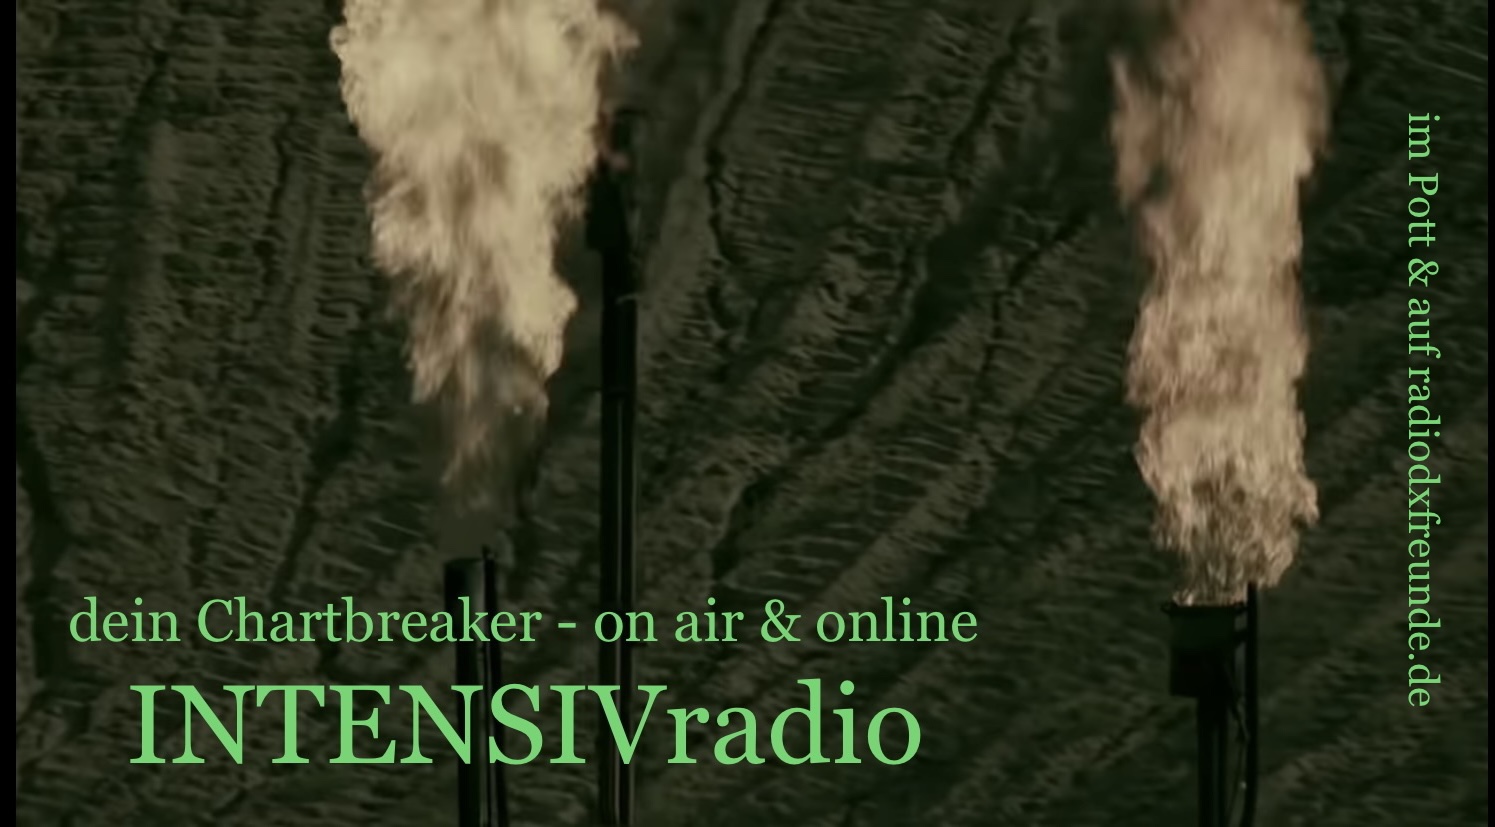 FM Empfang von INTENSIVradio 95.5MHz in Heiligenhaus